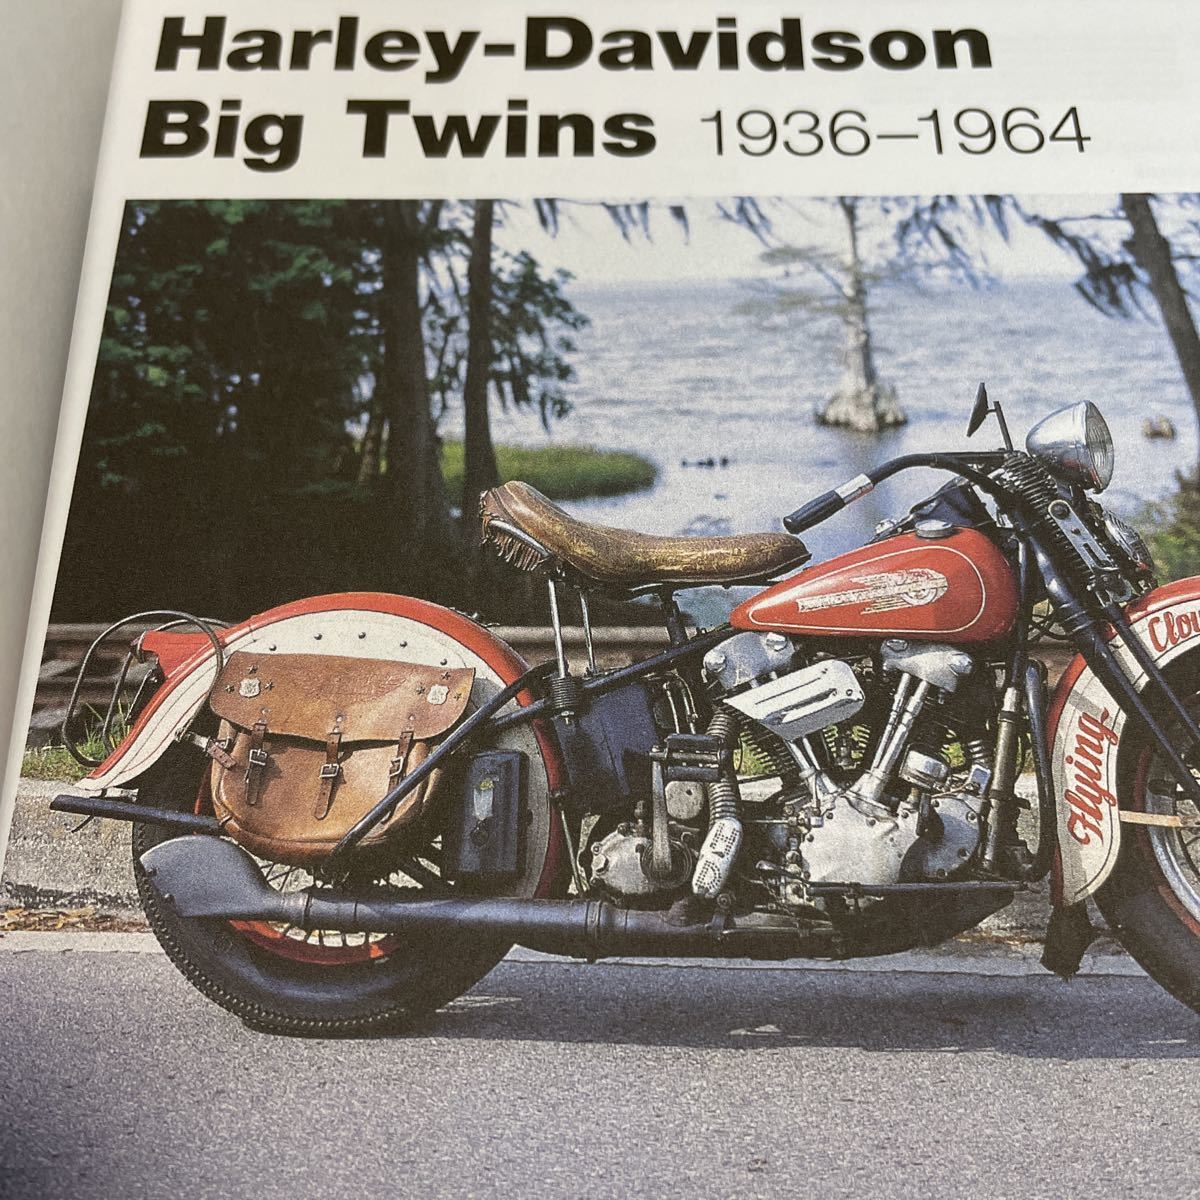 Classic Harley Davidson 1936 1964 ハーレー ハーレーダビッドソン ビック ツイン BIG TWIN レストア 参考書 要領 リペア リペアー ^在_在庫と納期を確認してください